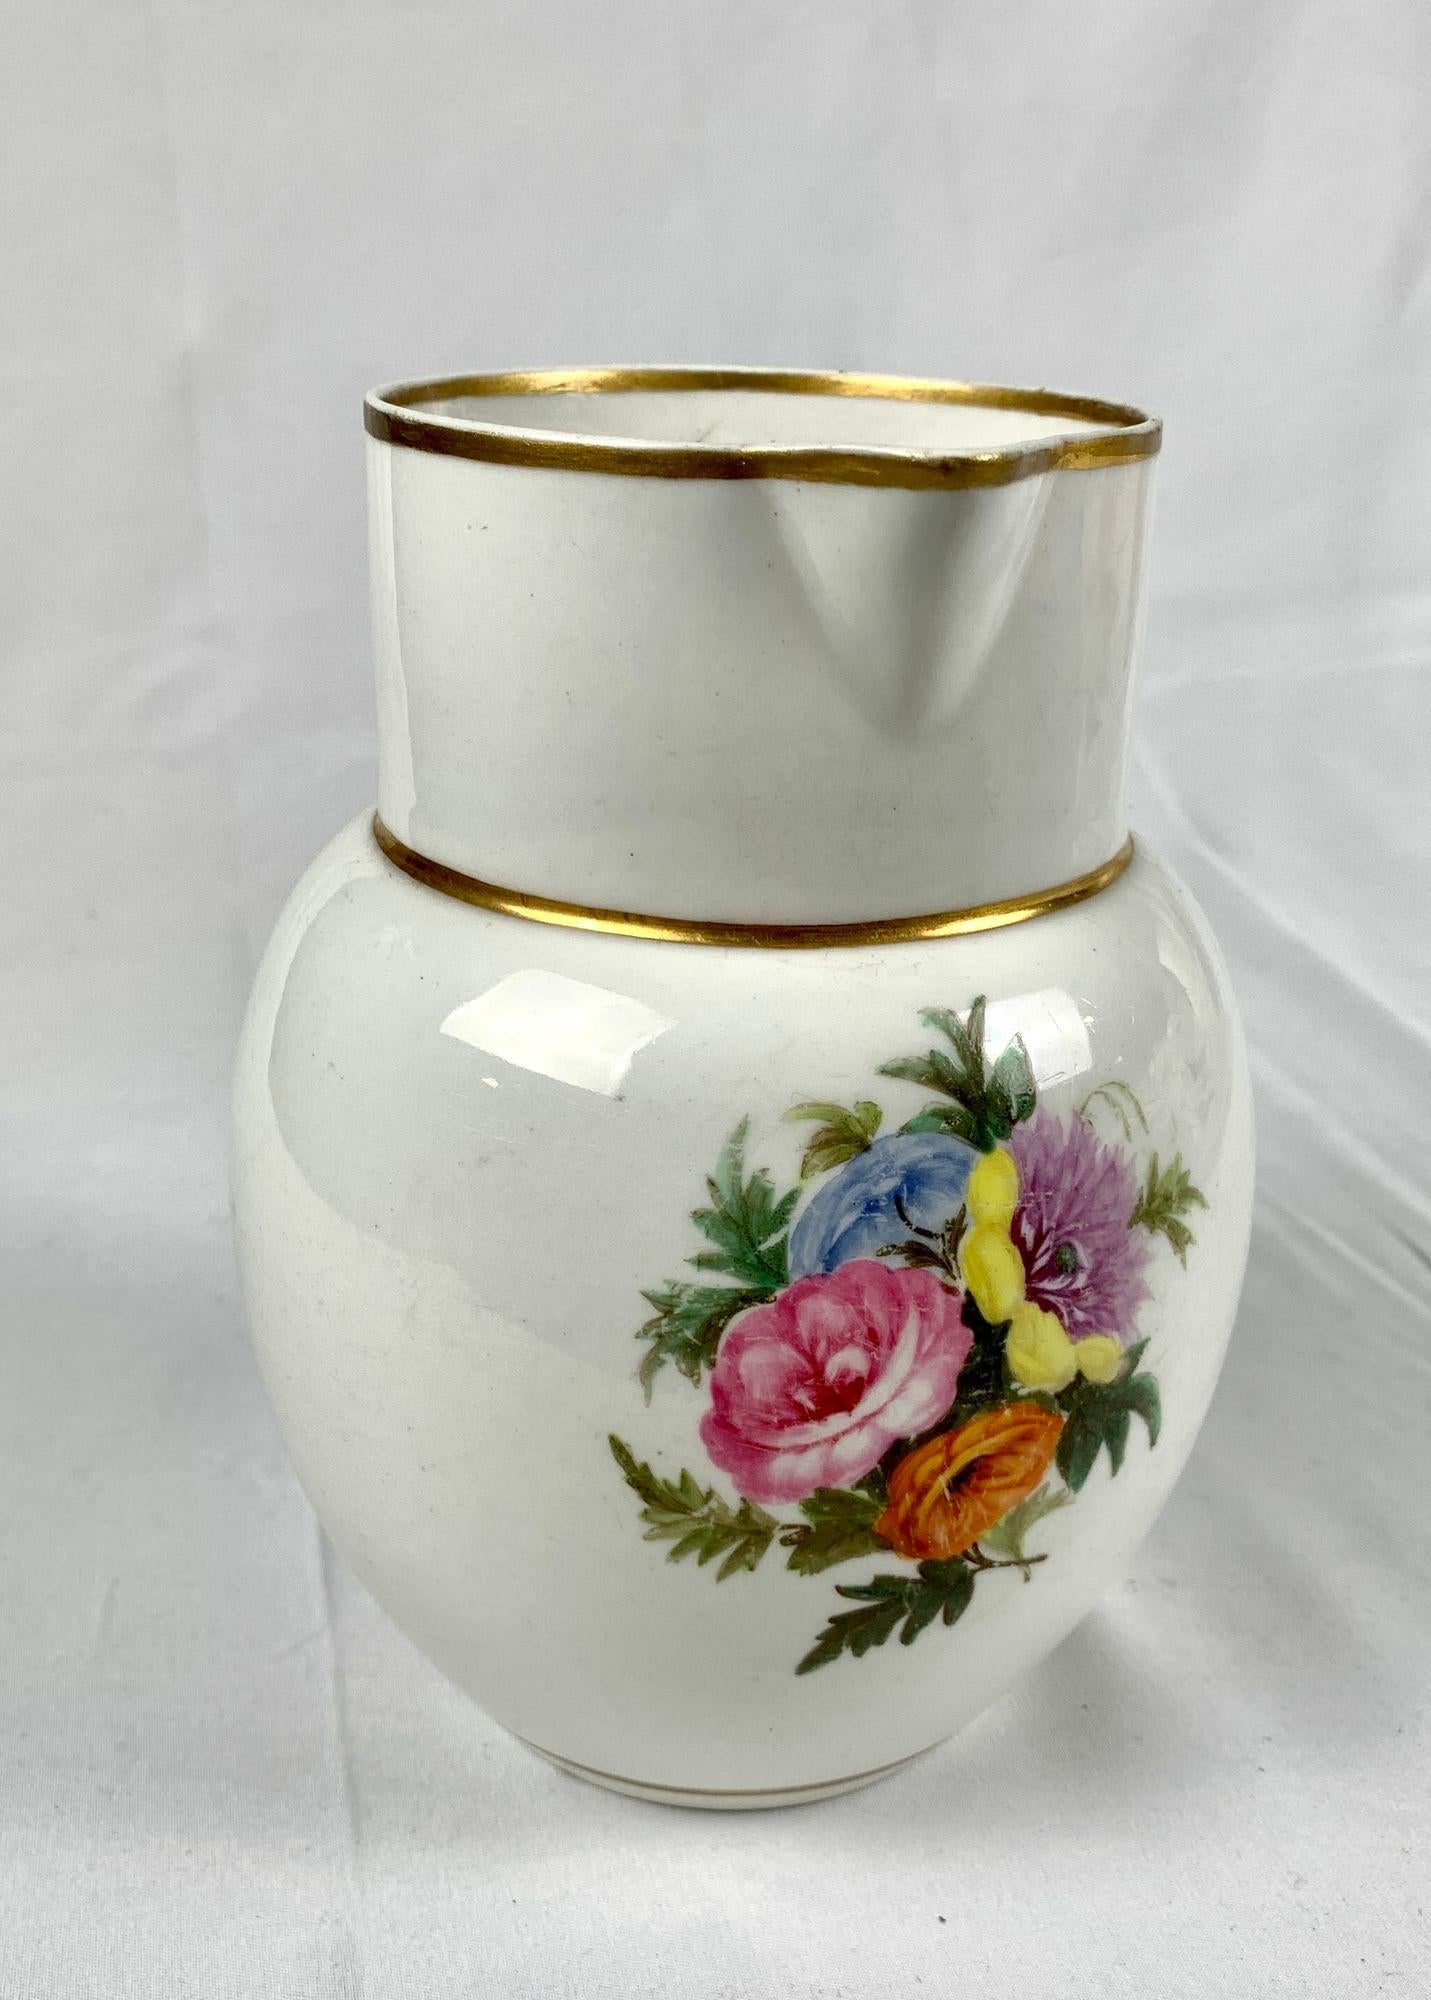 Dieser schlichte, charmante Staffordshire-Porzellankrug ist ideal für Blumen.
Der um 1830 in England hergestellte Krug ist auf der Vorderseite mit einem schönen handgemalten Blumenstrauß versehen.
Wir sehen die Farben Rosa, Hellblau, Gelb, Violett,